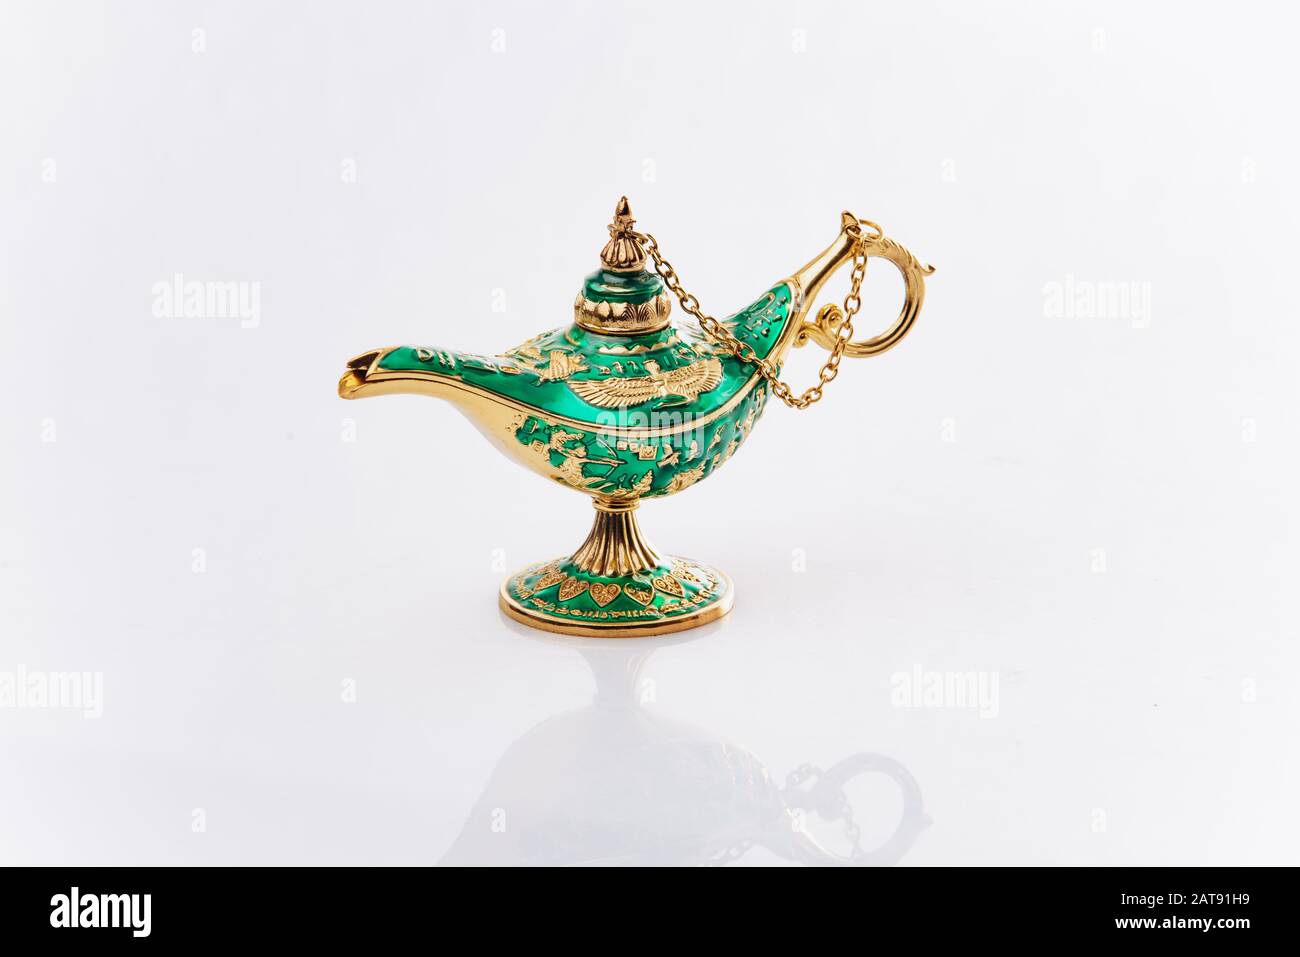 Aladdin's Magic genie Lampe auf Weiß isoliert. Aladdin's Lamp ist Grün auf weißem Hintergrund. Stockfoto